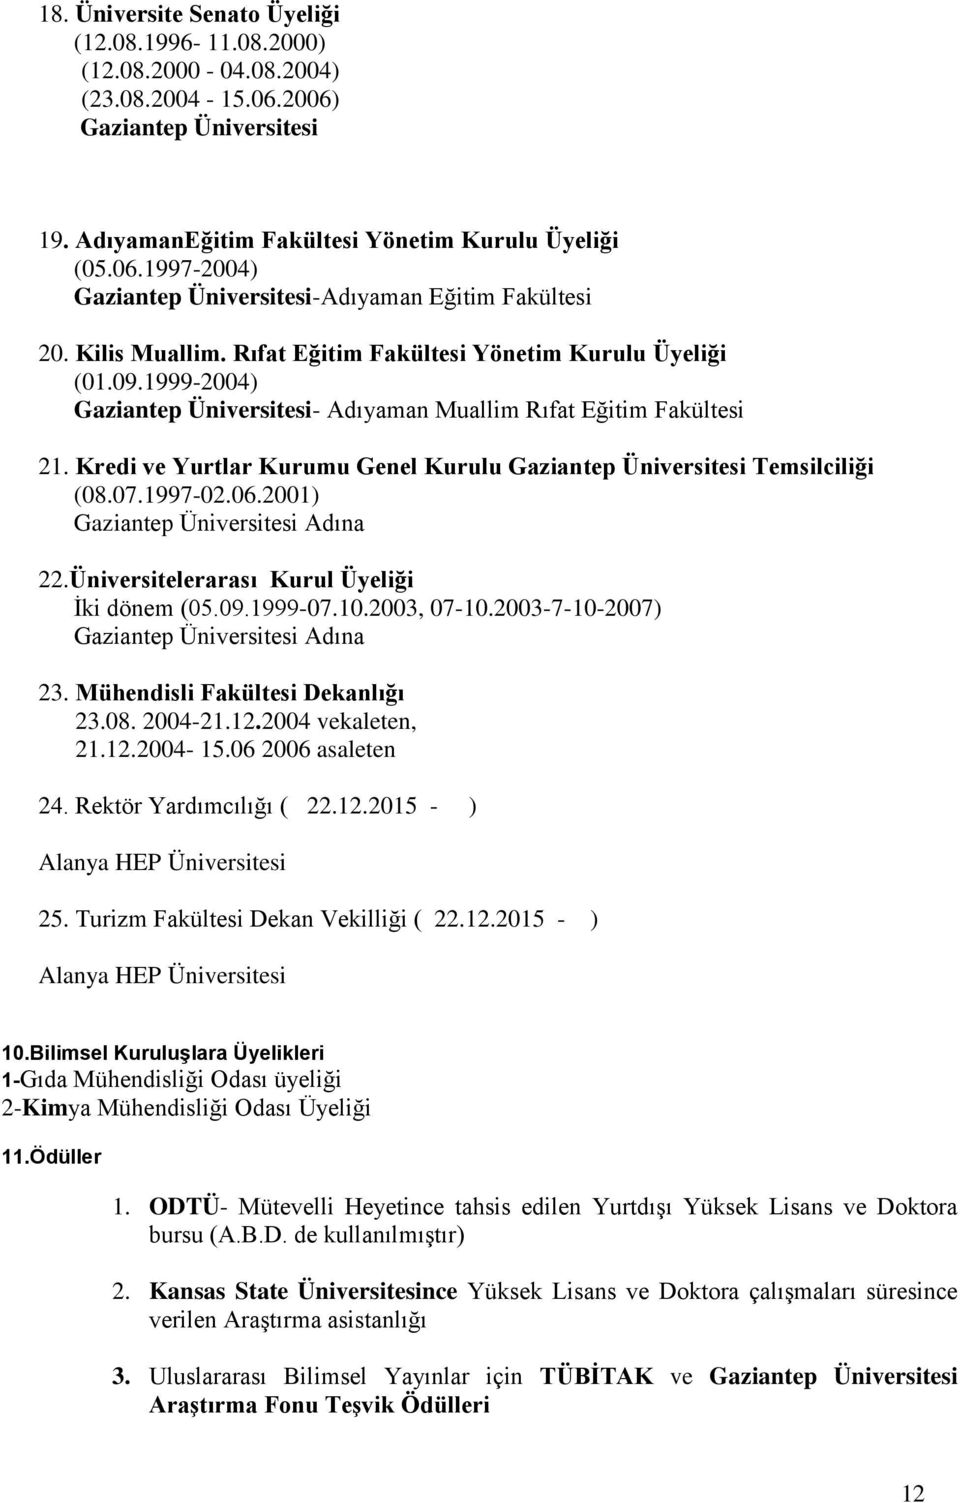 Kredi ve Yurtlar Kurumu Genel Kurulu Gaziantep Üniversitesi Temsilciliği (08.07.1997-02.06.2001) Gaziantep Üniversitesi Adına 22.Üniversitelerarası Kurul Üyeliği İki dönem (05.09.1999-07.10.